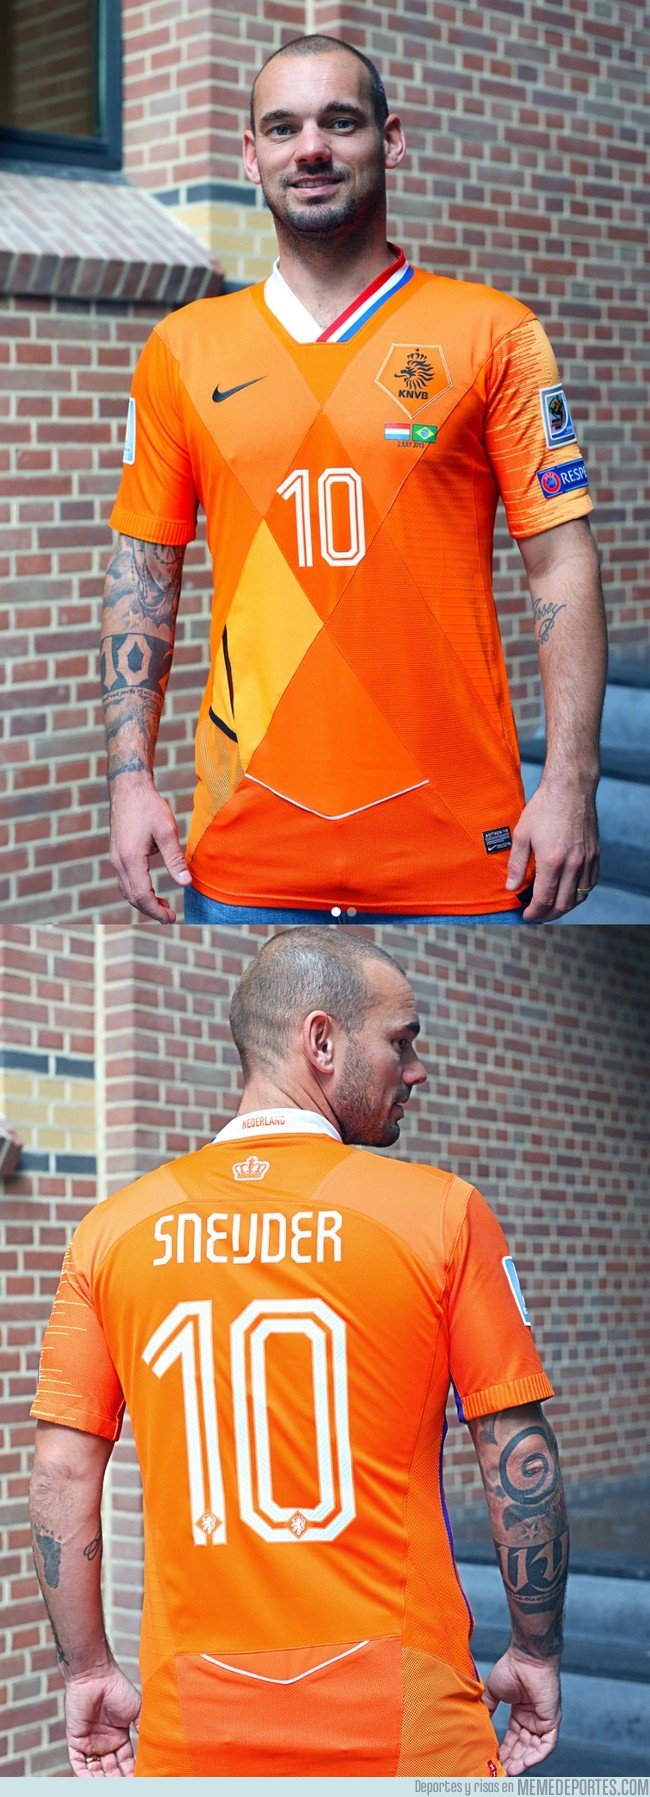 1050224 - Crean una camiseta para Wesley Sneijder con recortes de todas las camisetas que ha lucido durante su trayectoria como internacional con Holanda